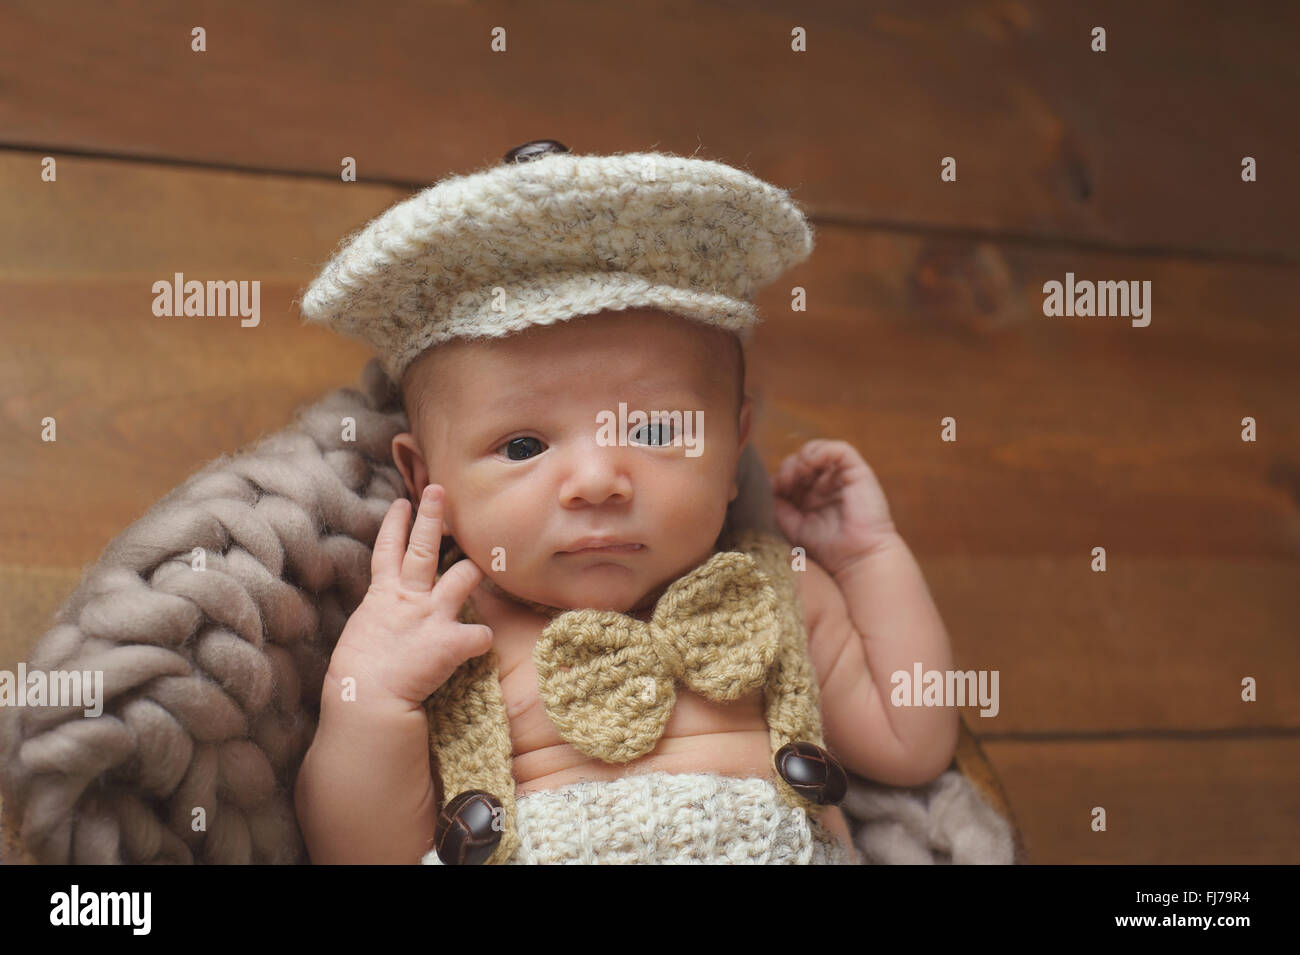 Bébé nouveau-né garçon portant une casquette Gavroche et Bowtie Photo Stock  - Alamy